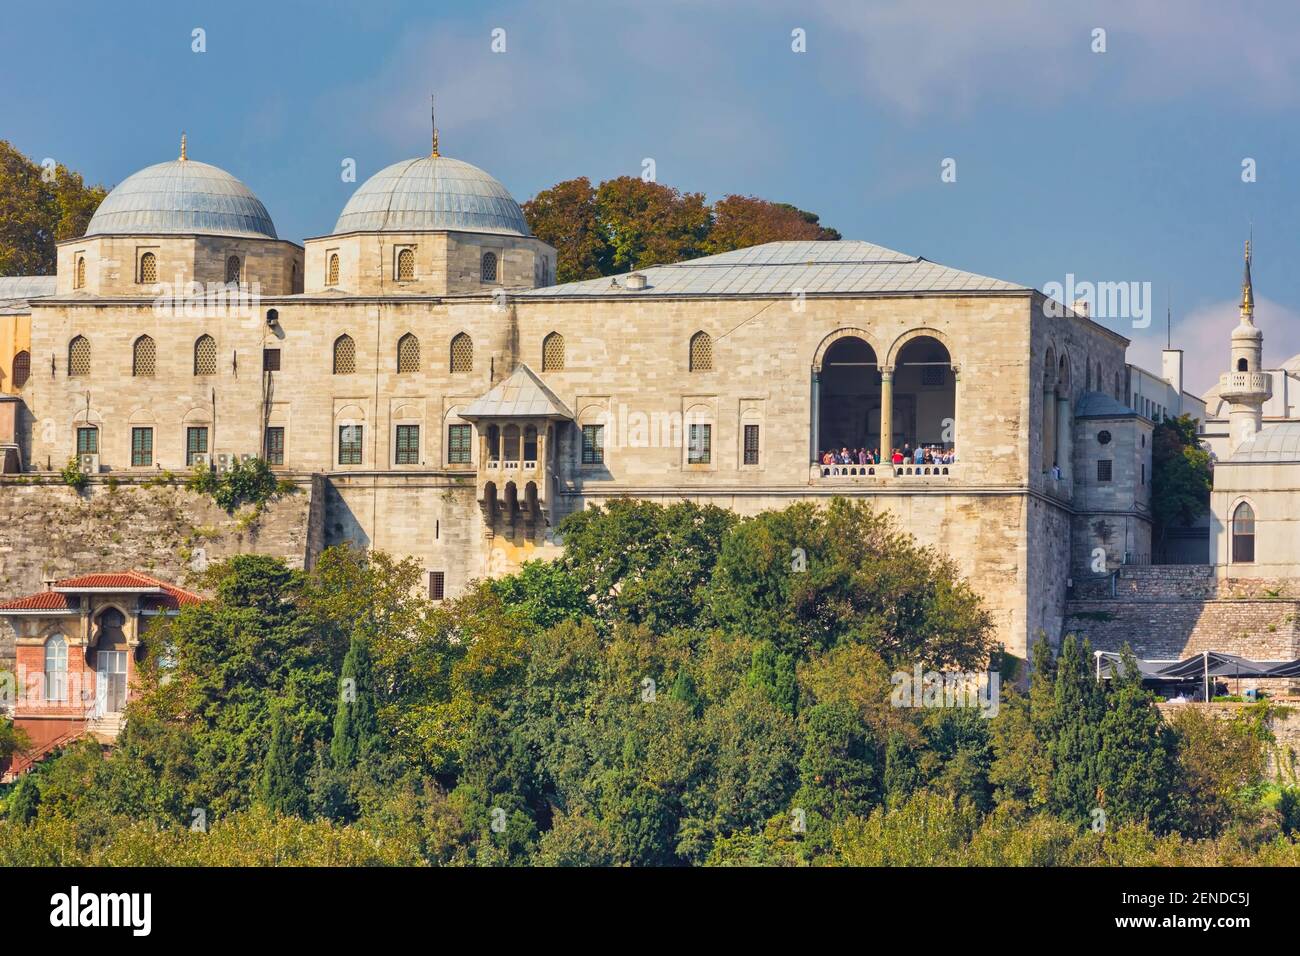 Istanbul, Türkei. Topkapi Palast vom Meer aus gesehen. Topkapi Sarayi. Topkapi ist Teil der historischen Gegenden von Istanbul, die ein UNESCO World Herita ist Stockfoto